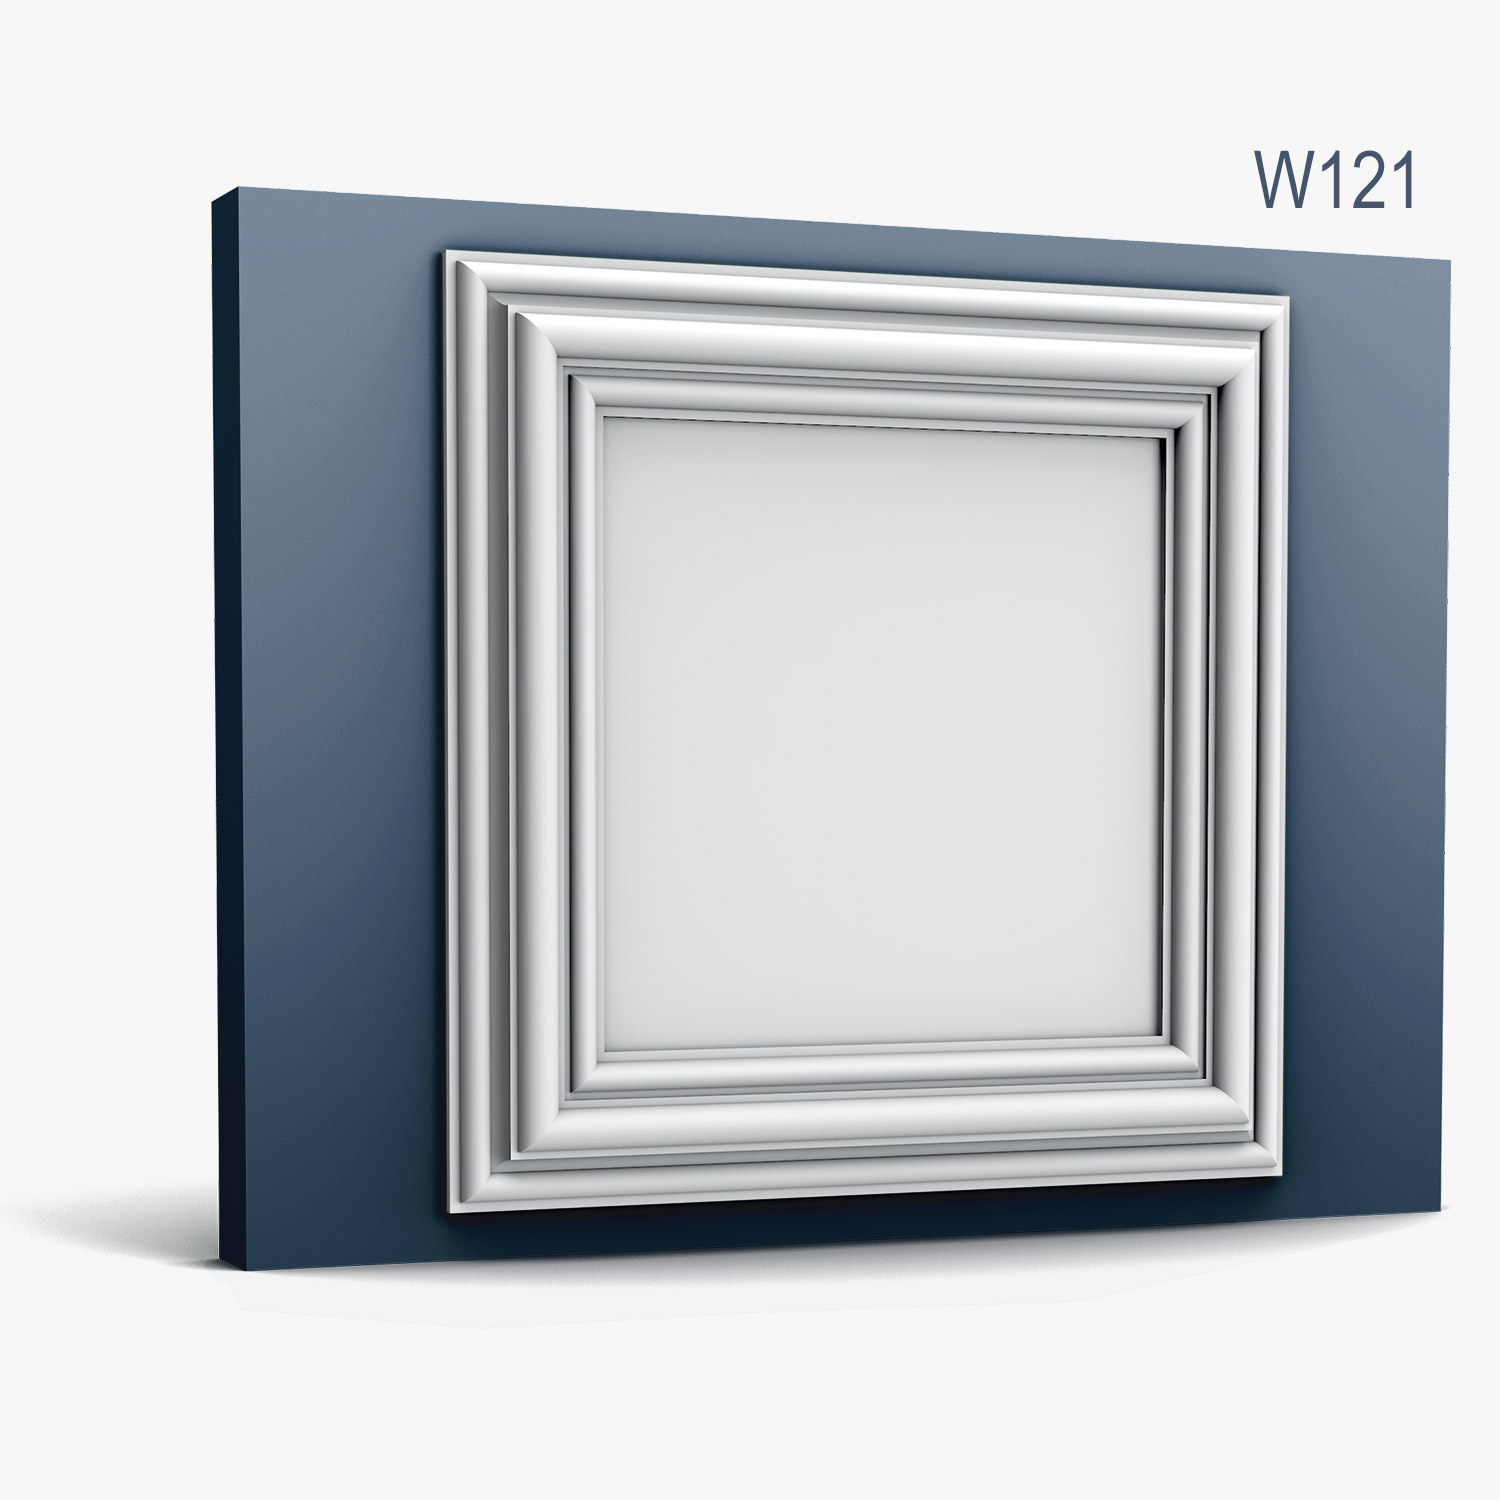 Panel Modern W121, Dimensiuni: 50 X 50 X 3.2 cm, Orac Decor